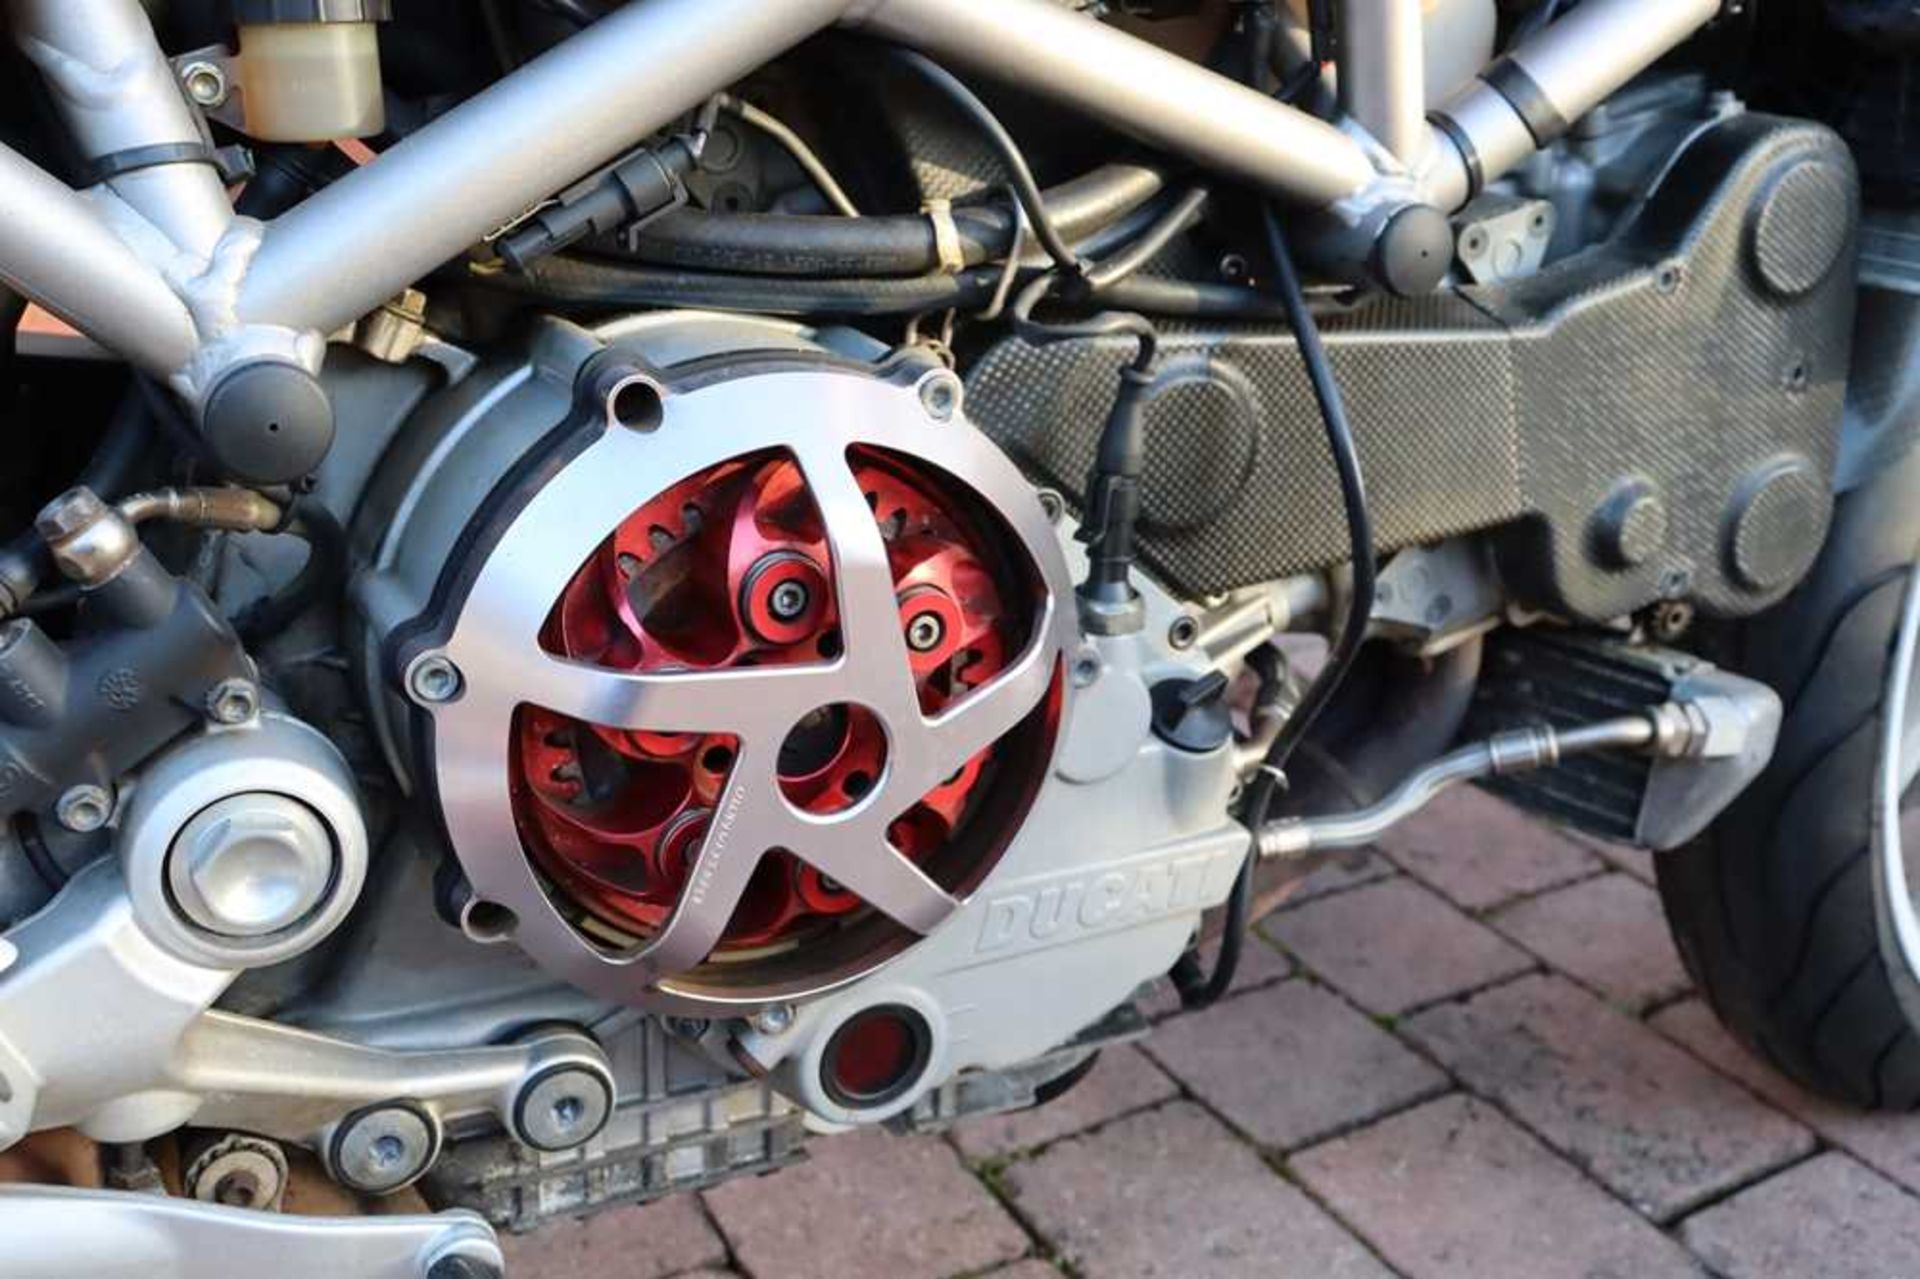 2003 Ducati Monster S4R 996 Desmoquattro Superbike engine - Image 43 of 54